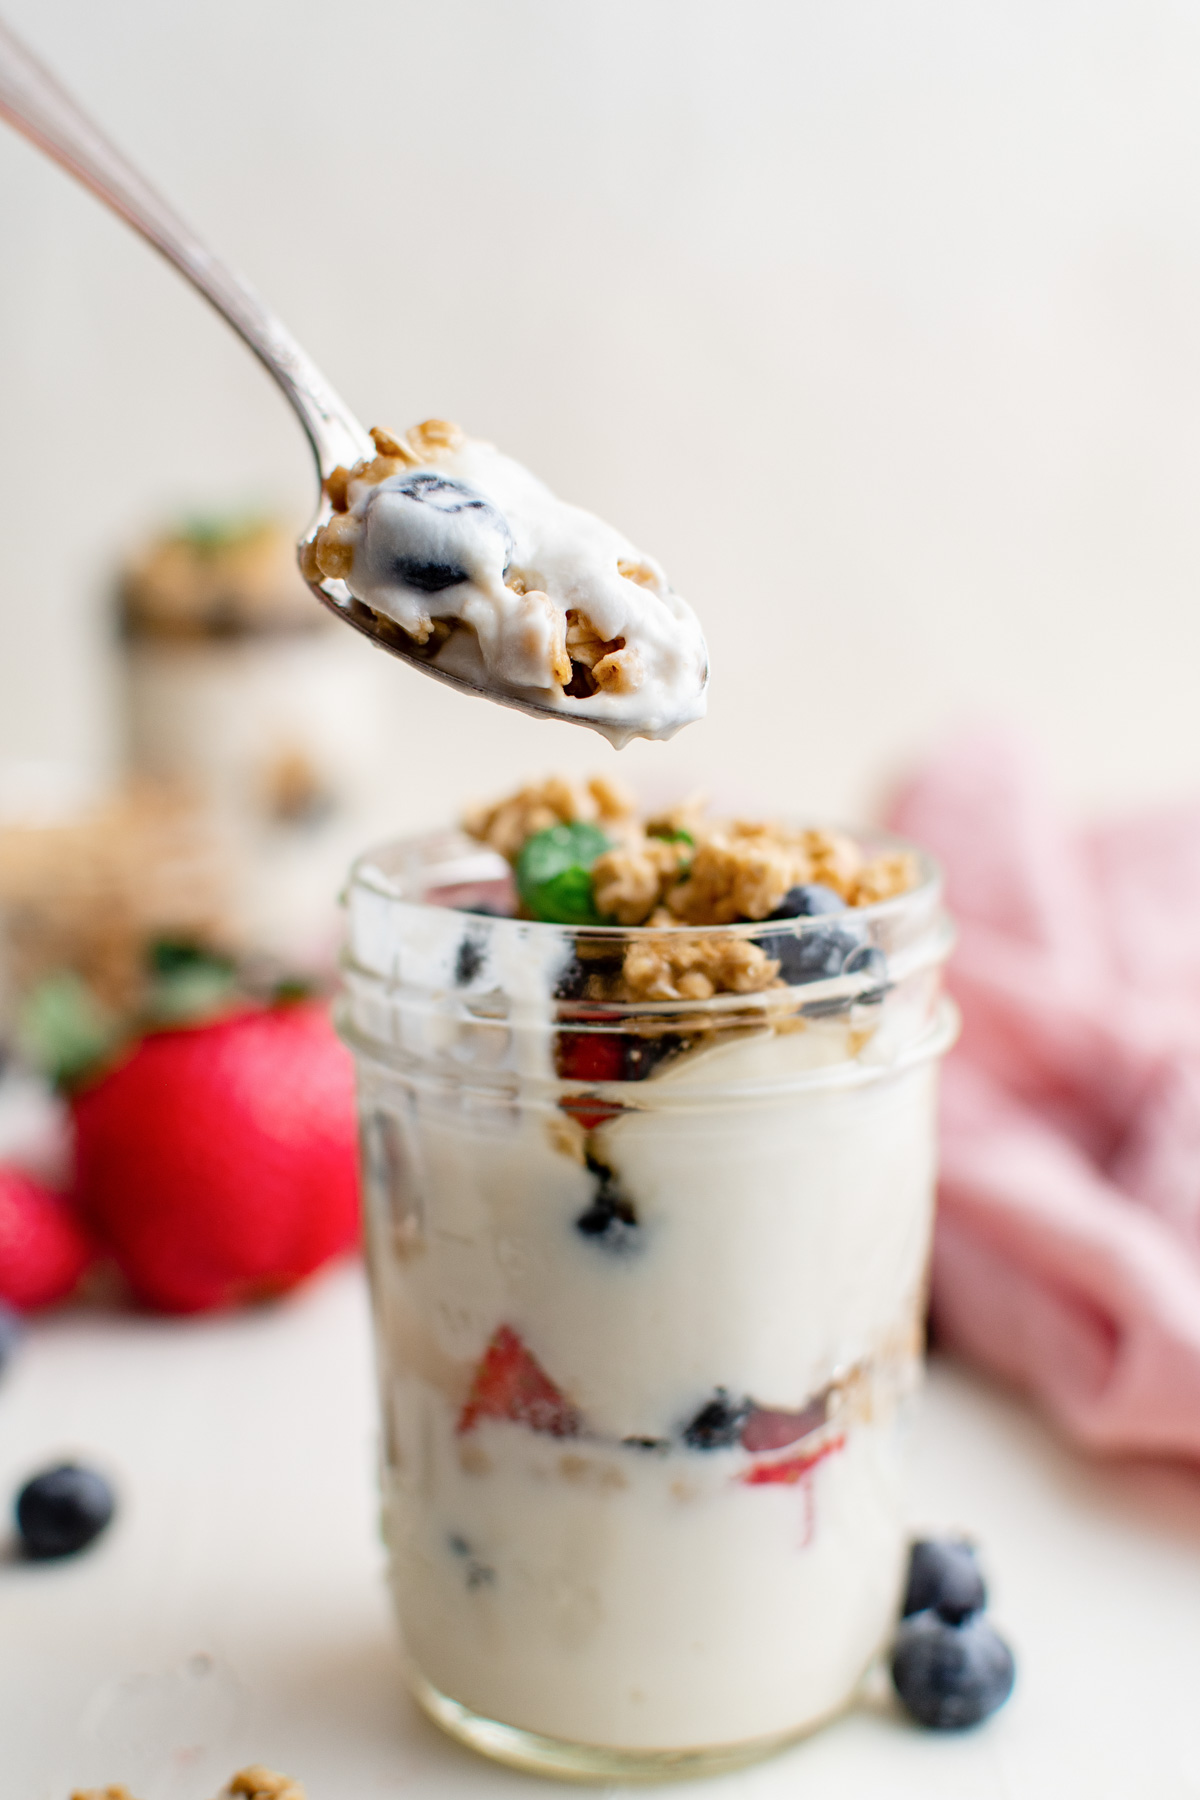 glass jar with yogurt parfait, spoon